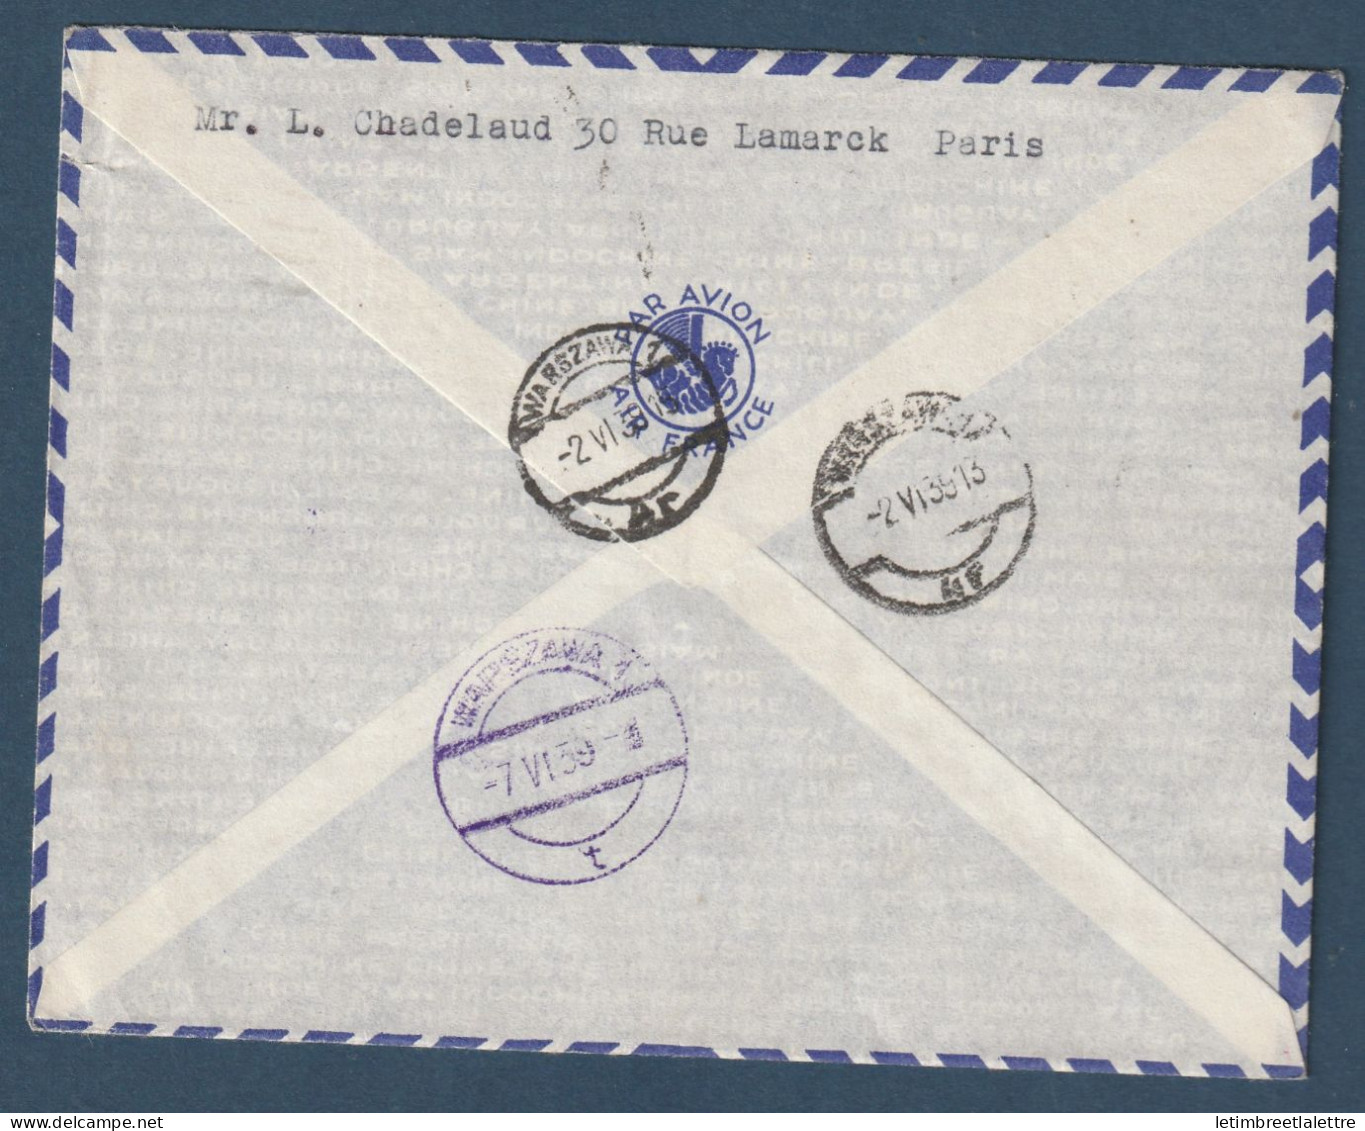 France - Service Postale Aérien Sans Surtaxe - France - Finlande - France Pologne - Retour à L'envoyeur - 1er Juin 1939 - First Flight Covers